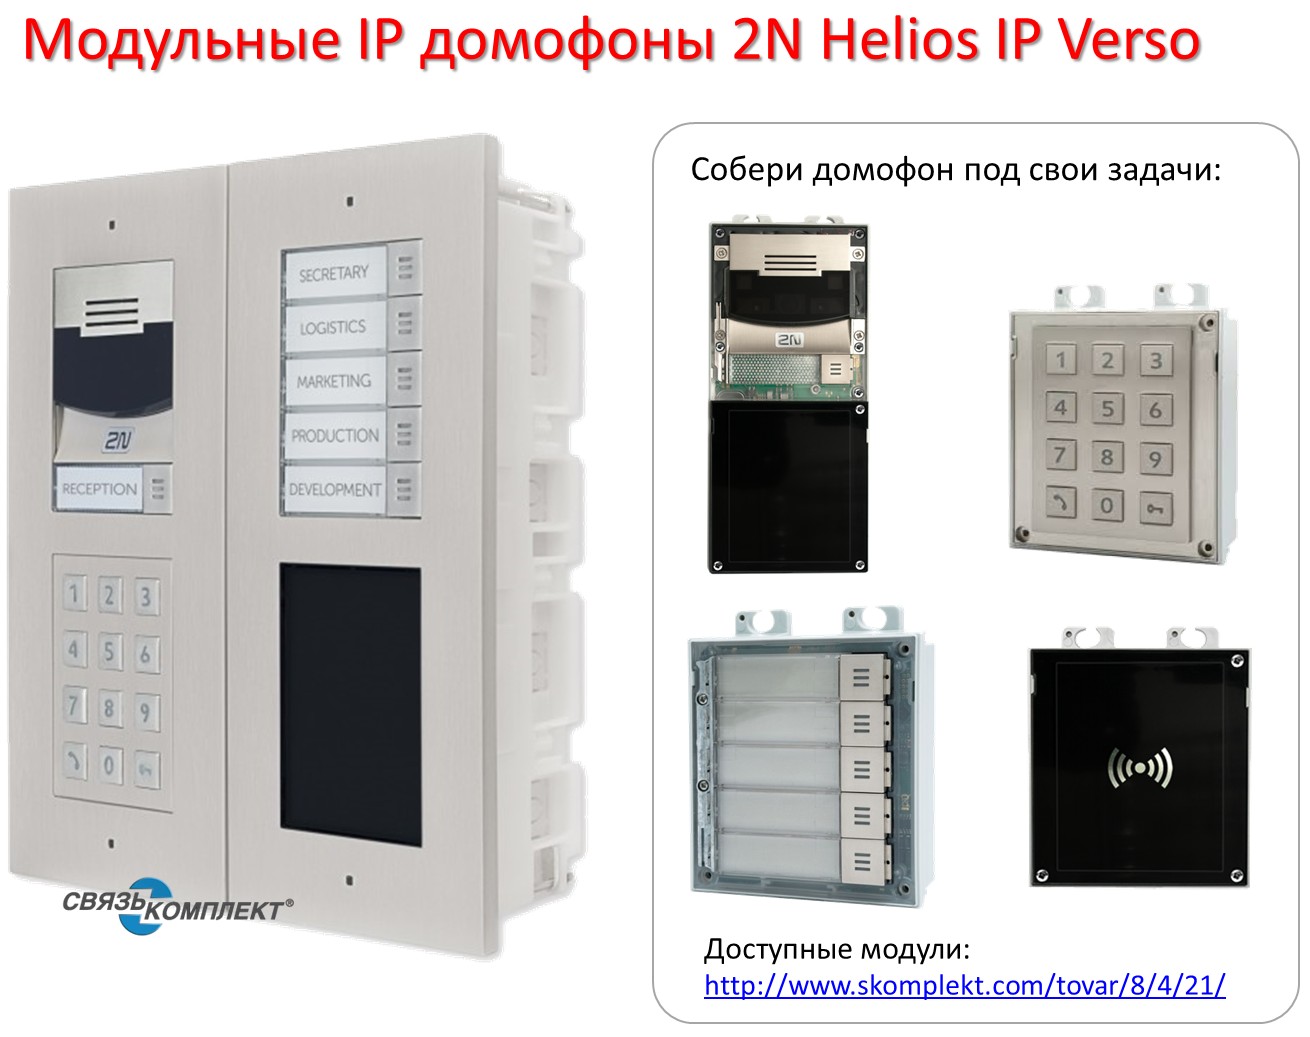 Новинка: модульные IP домофоны 2N Helios IP Verso